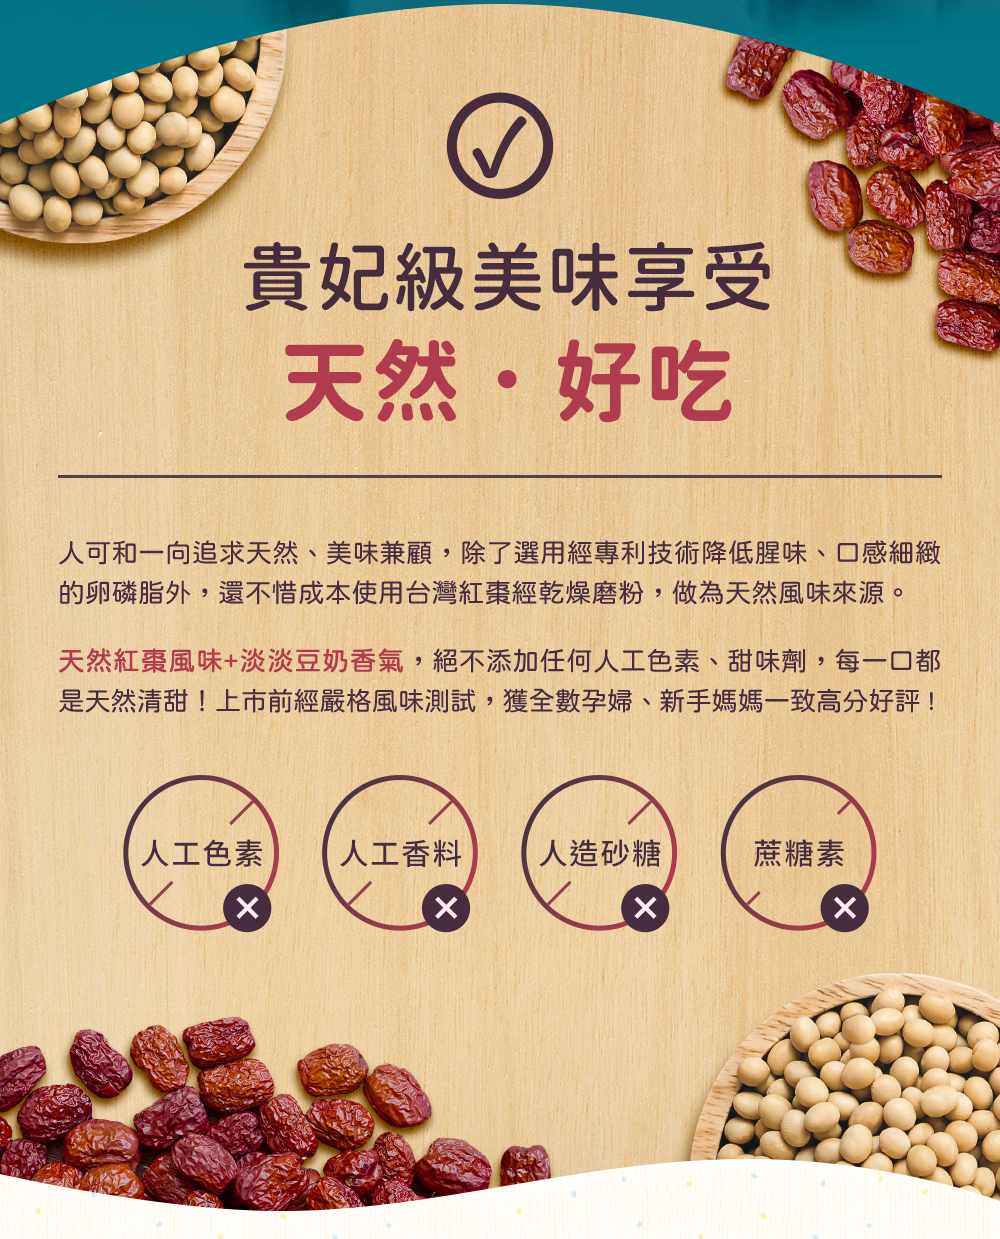 人可和一向追求天然、美味兼顧，除了選用經專利技術降低卵磷脂的腥味，還不惜成本使用台灣紅棗經乾燥磨粉，做為天然風味來源。